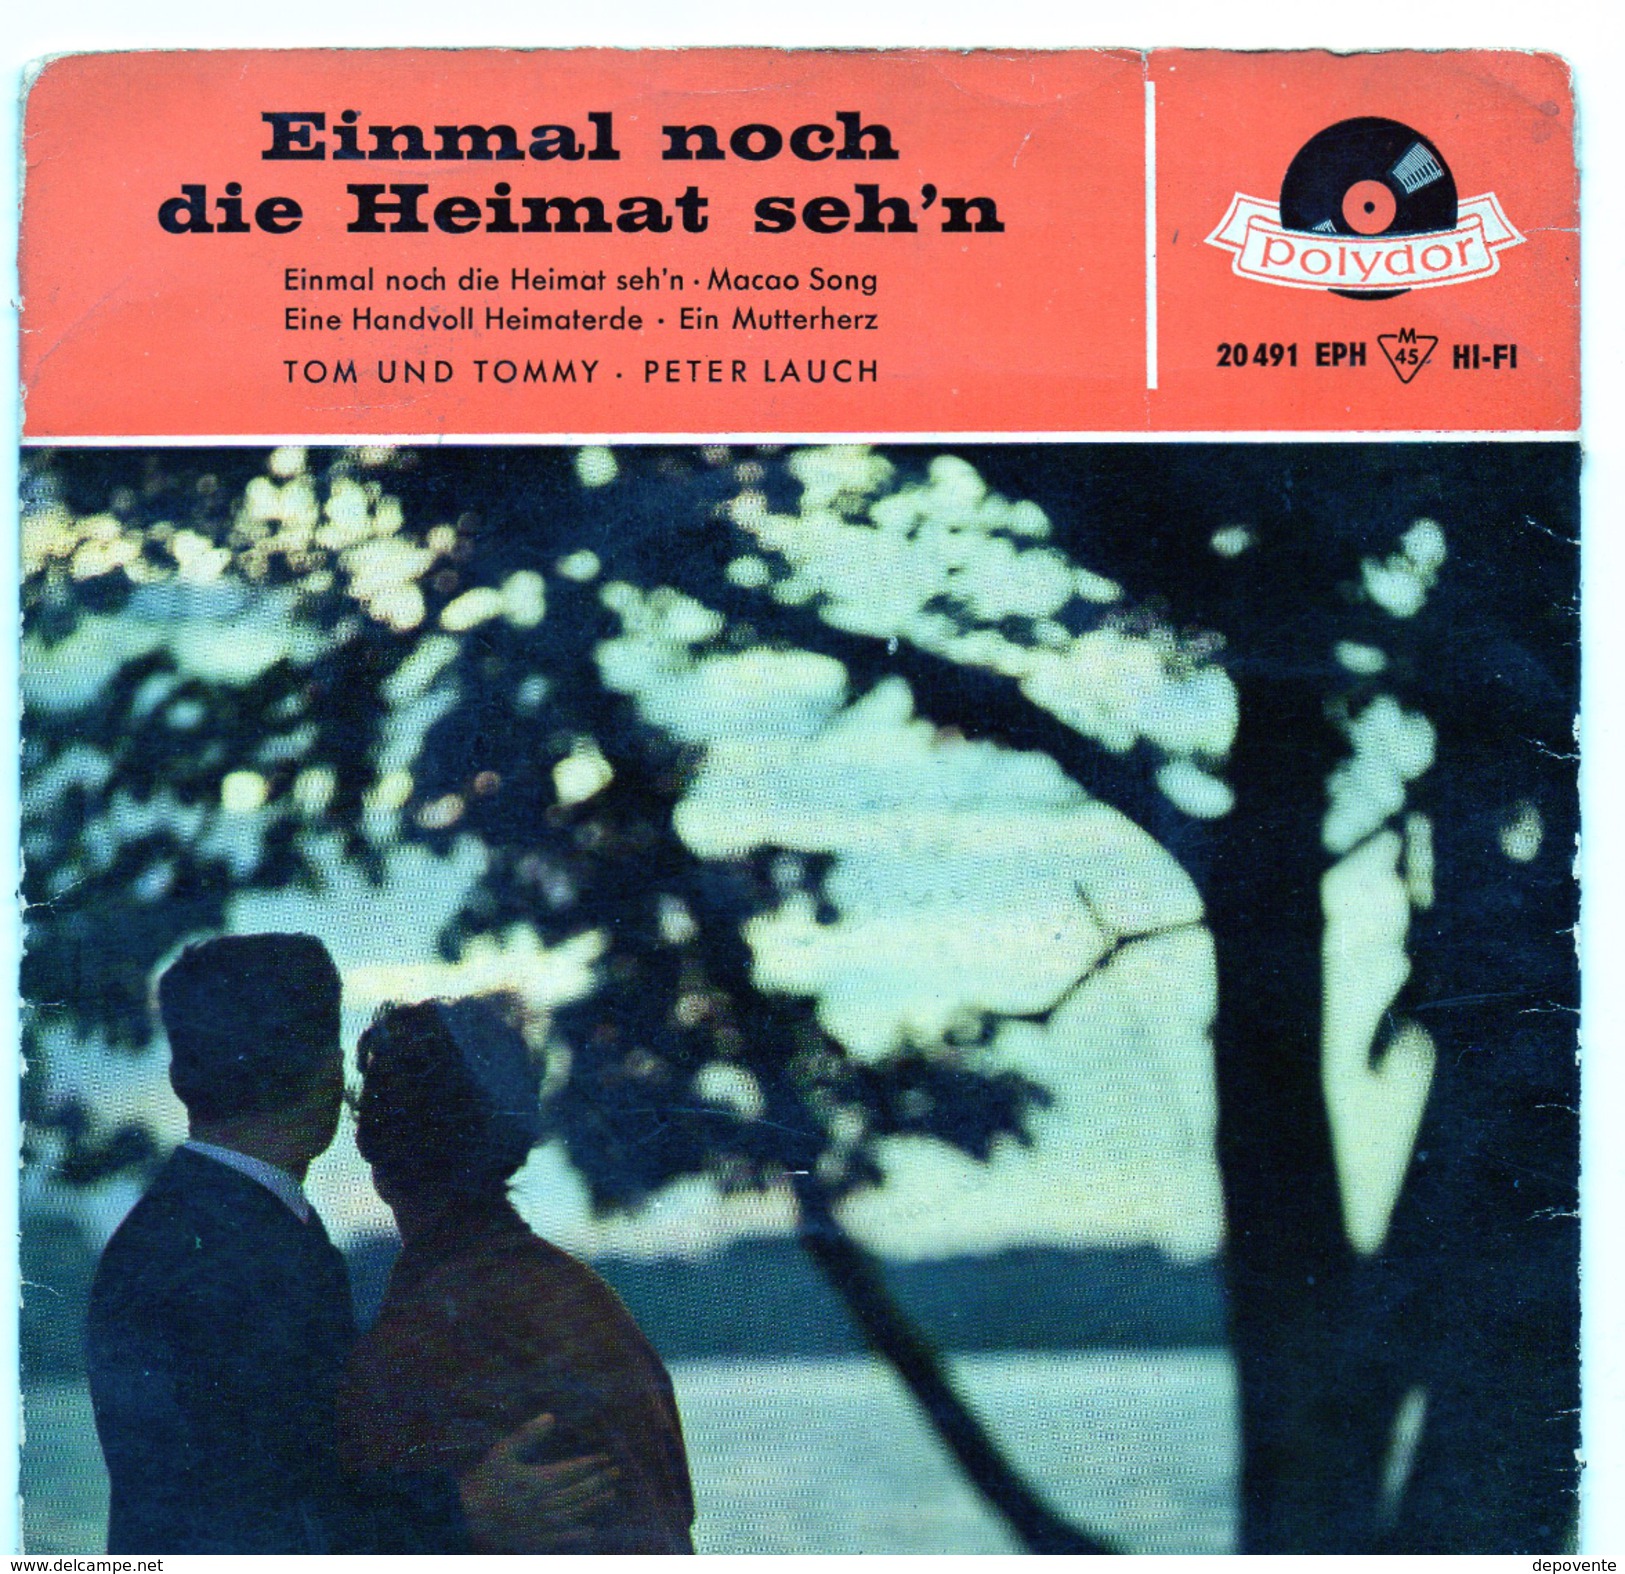 45T : TOM UND TOMMY / PETER LAUCH - EINMAL NOCH DIE HEIMAT SEH'N - Sonstige - Deutsche Musik